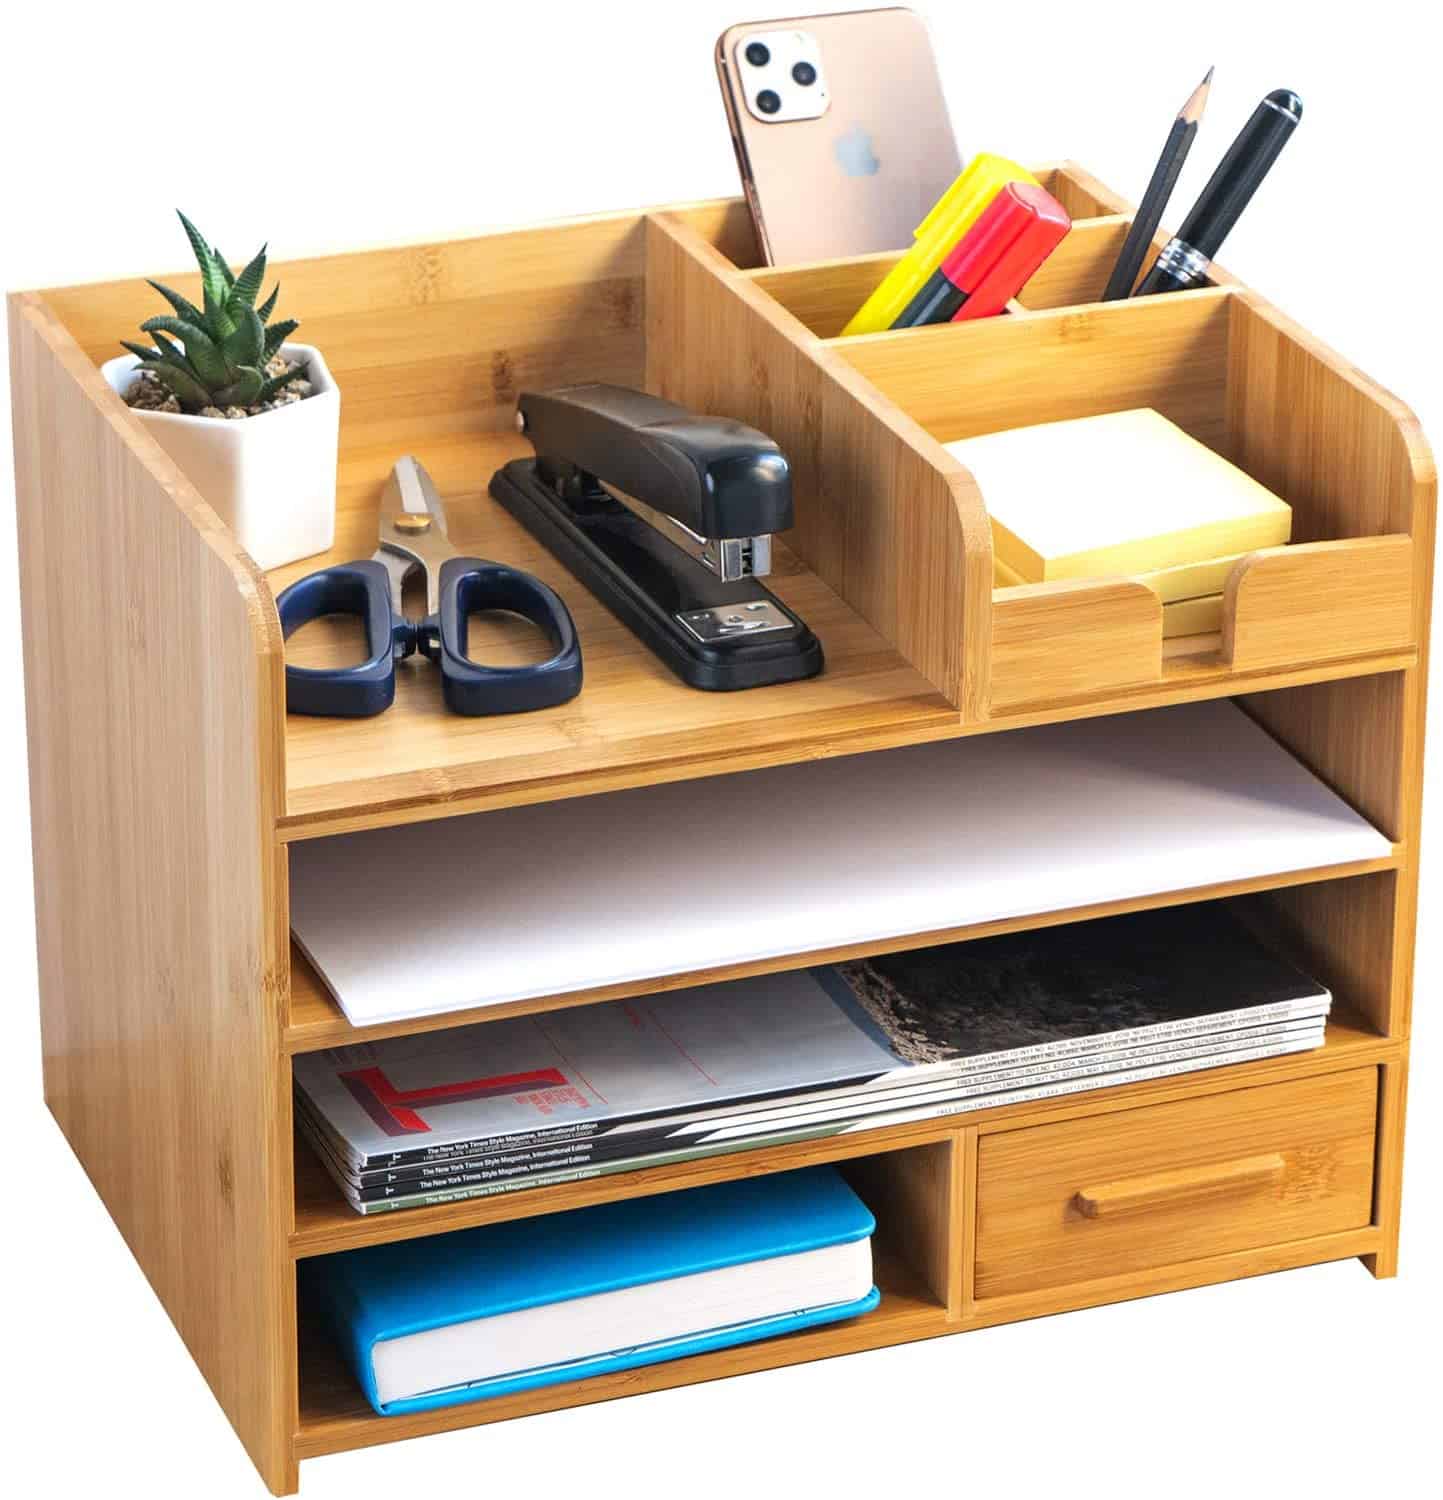 Bamboo Desk Organiser, Gift Ideas for your Boss